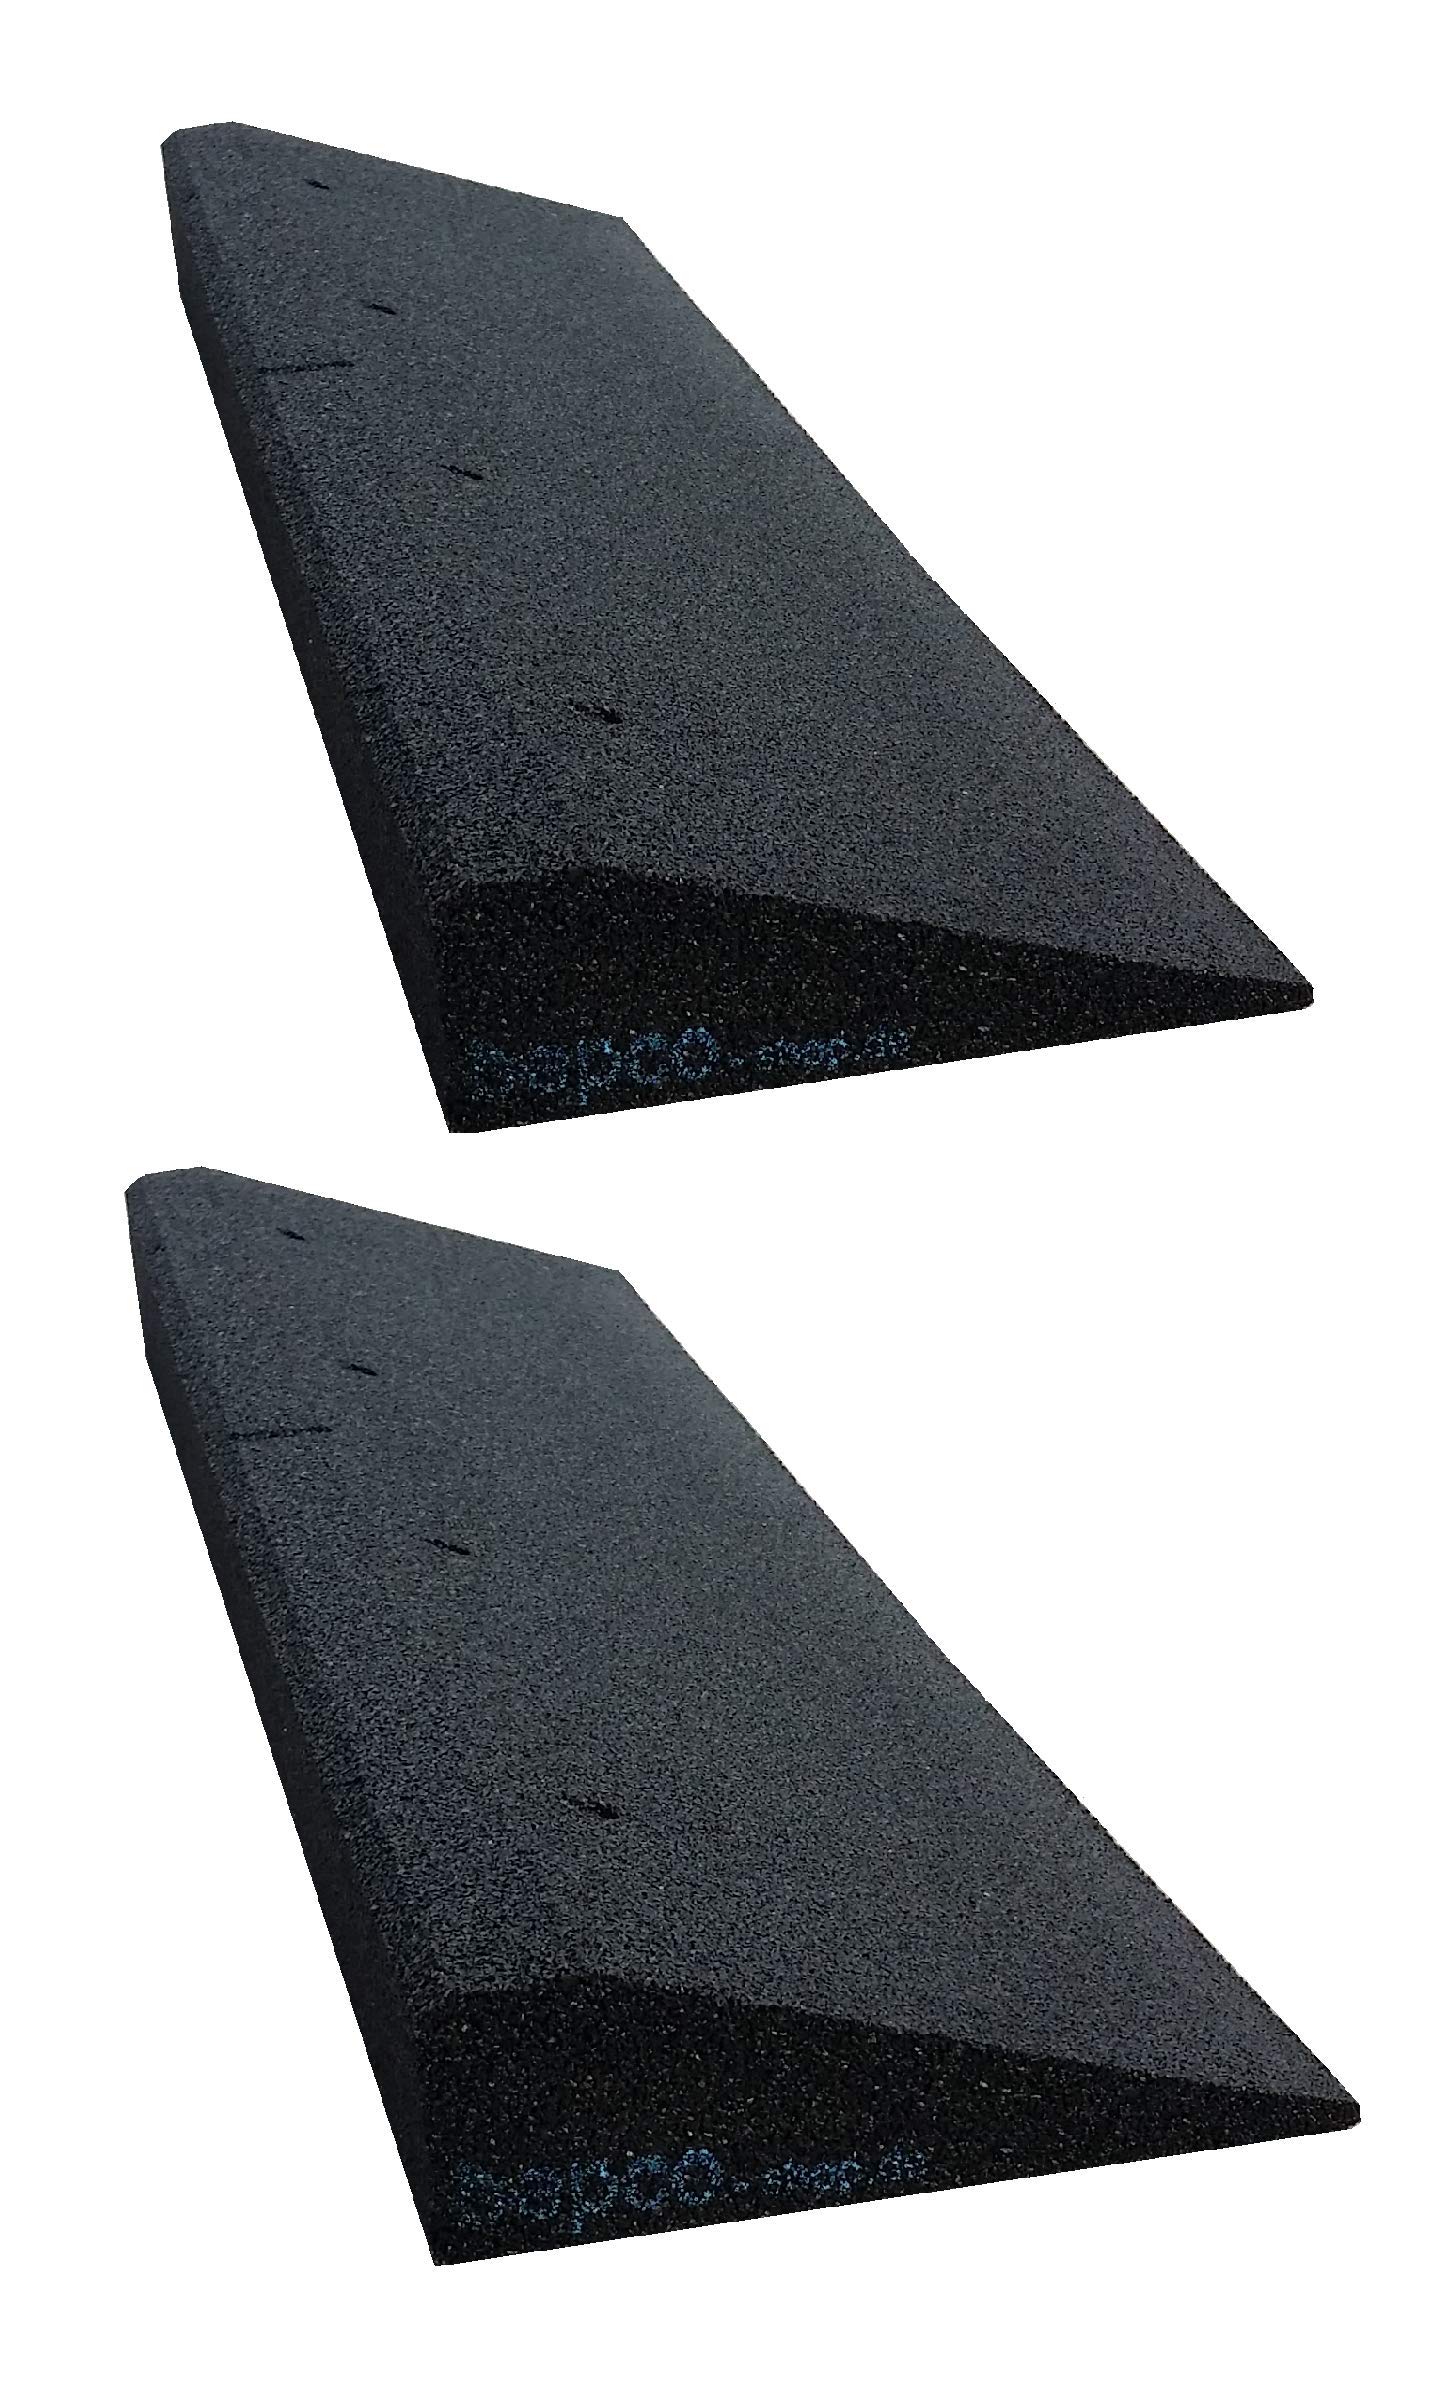 bepco Bordsteinkanten-Rampe 2er Set (2 Stück), LxBxH: 100 x 25 x 4 cm aus Gummi (schwarz) Auffahrrampe,Türschwellenrampe, mit eingelagerten Unterlegscheiben zur Befestigung